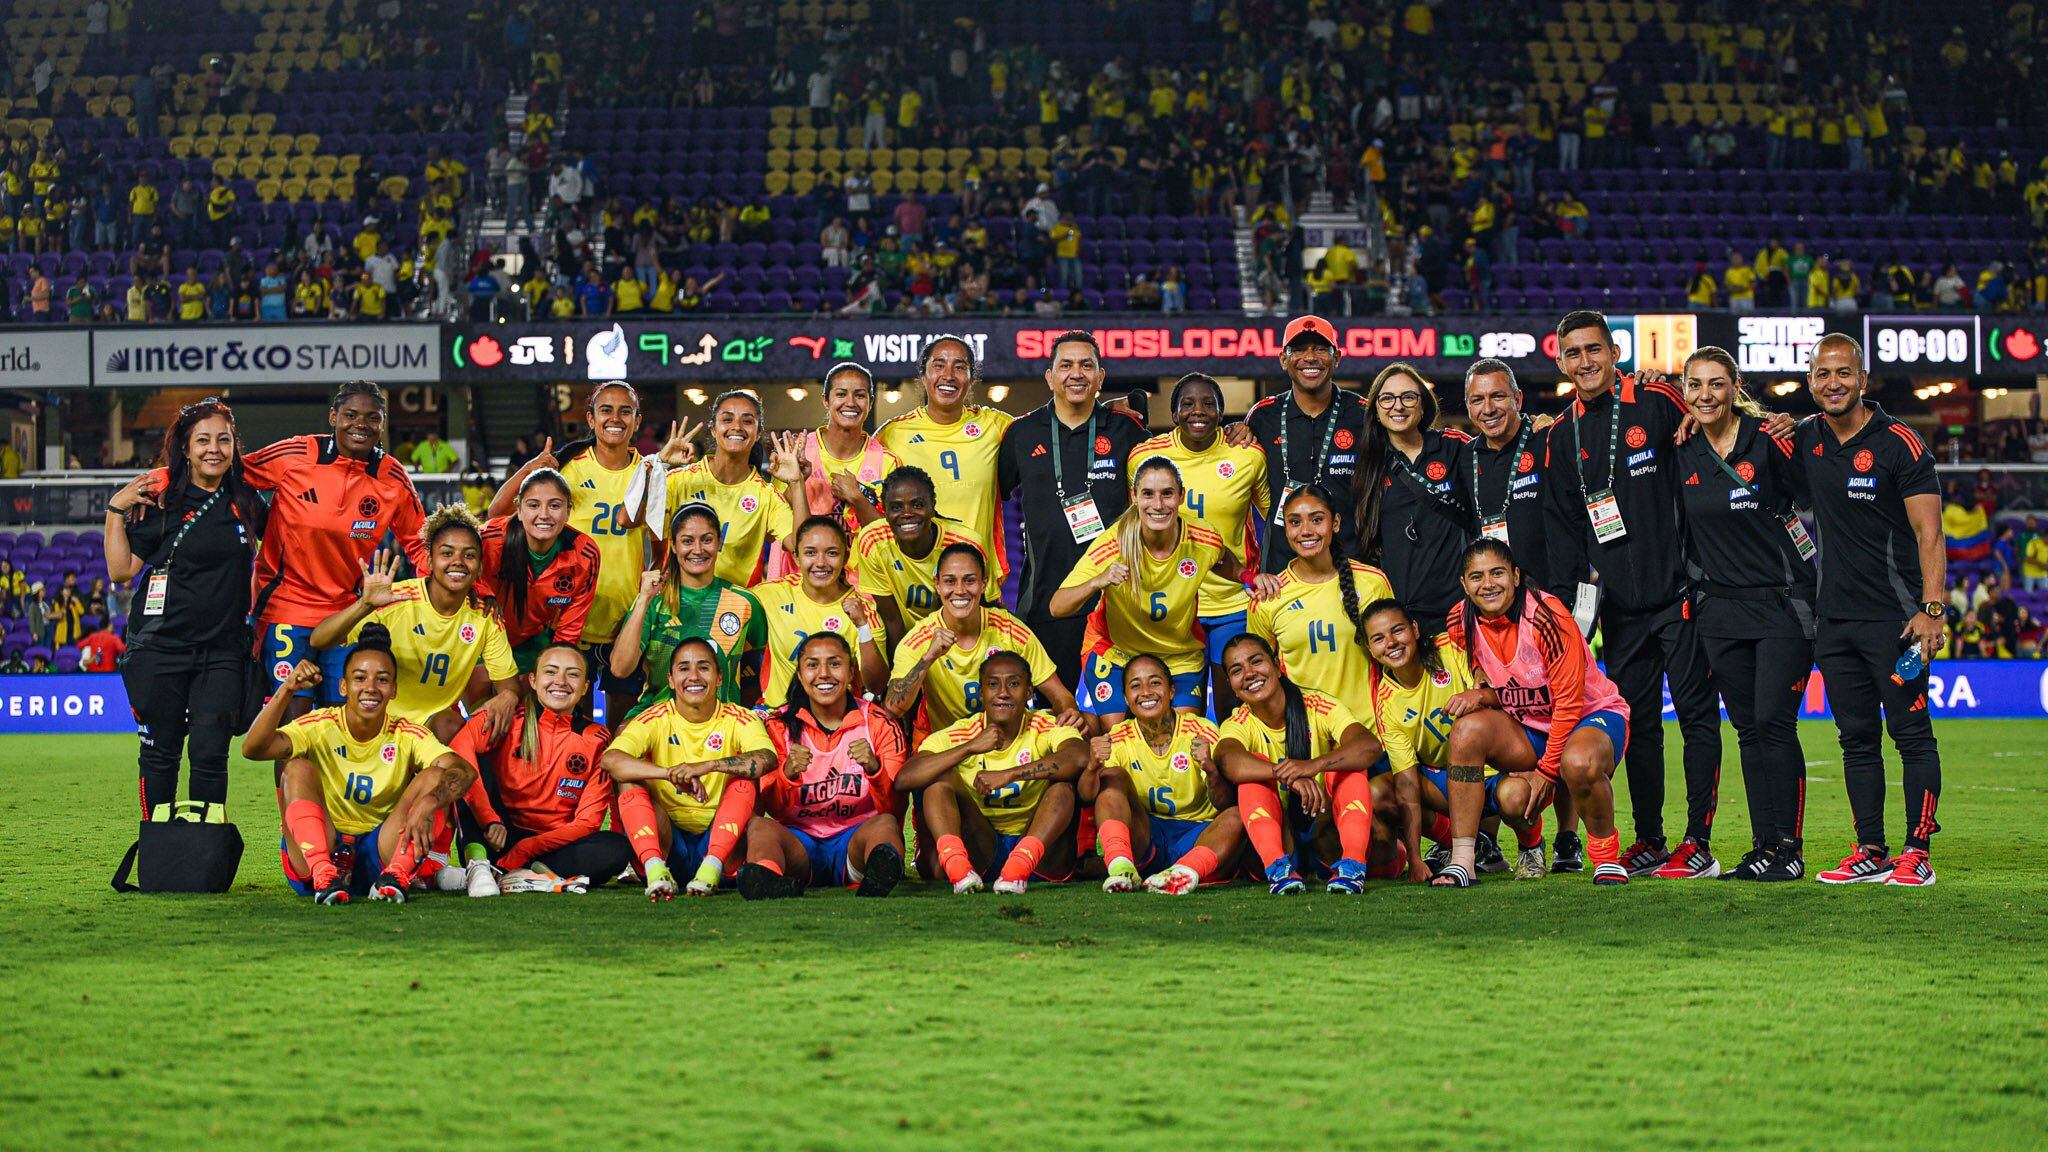 La selección Colombia Femenina tiene la ilusión de llegar al podio en los Juegos Olímpicos de París 2024 - crédito Federación Colombiana de Fútbol